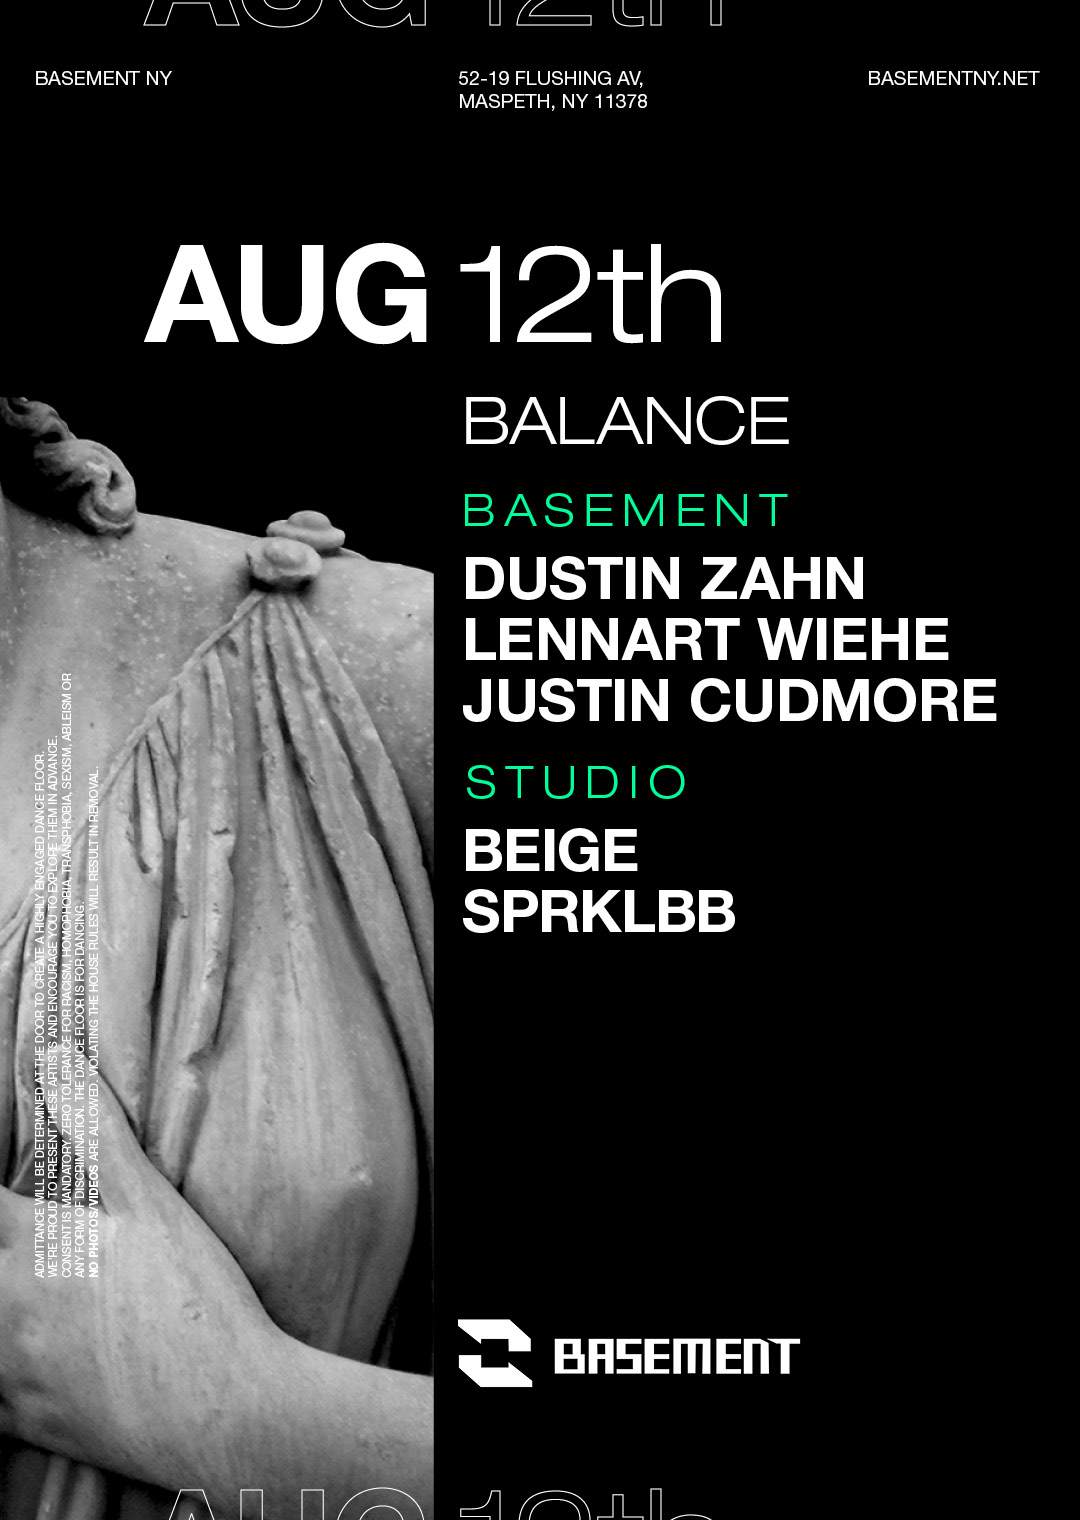 Balance: Dustin Zahn / Lennart Wiehe / Justin Cudmore / BEIGE / SPRKLBB - Página frontal